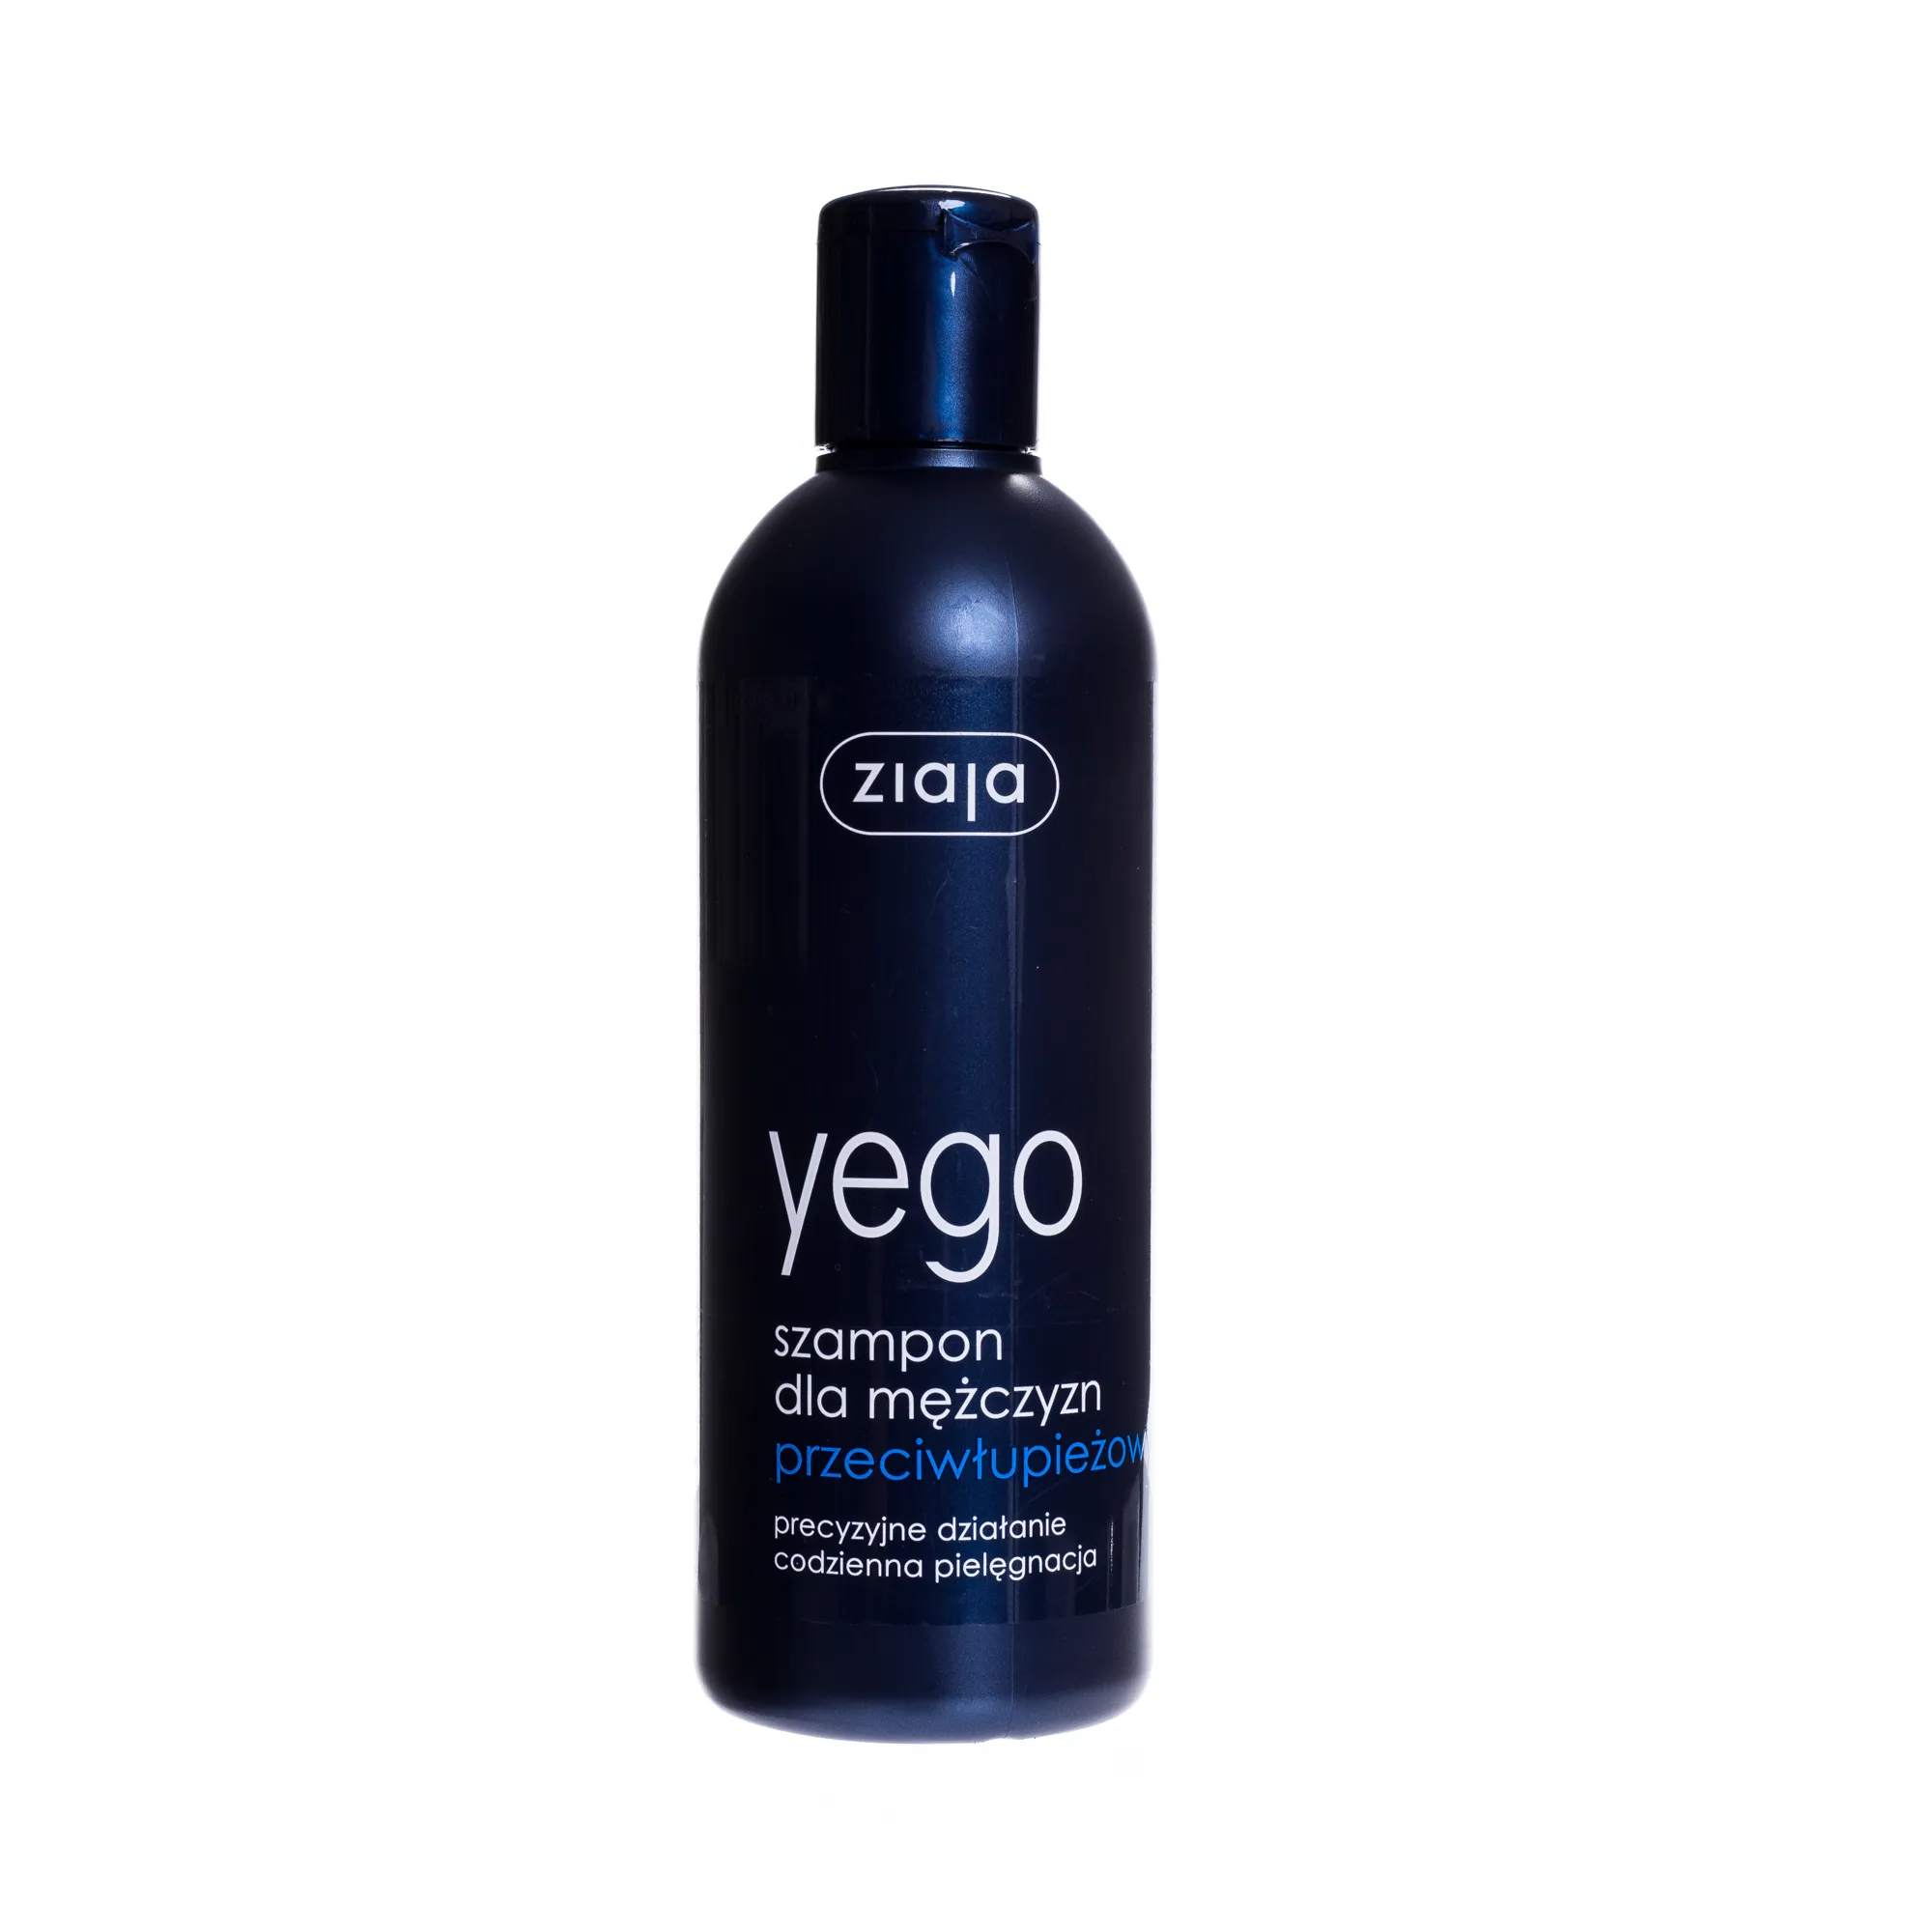 ziaja yego sensitiv wzmacniający szampon 300ml